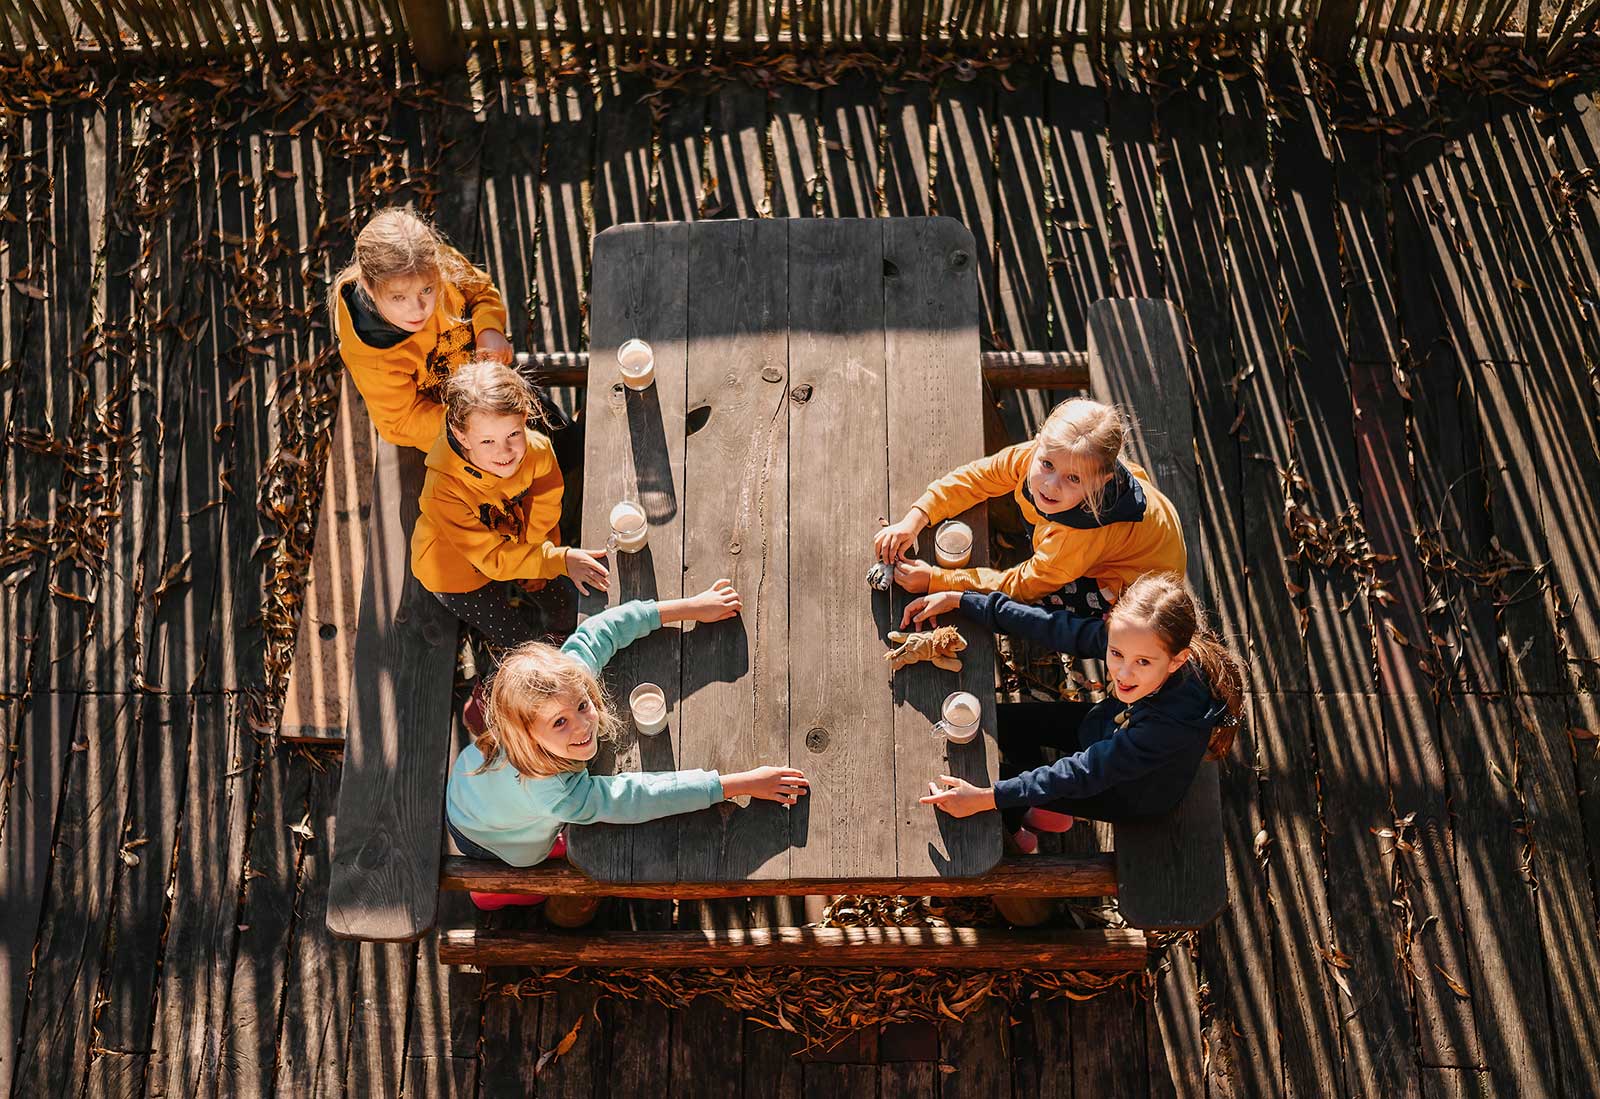 Grupka dzieci siedzi przy stole na dworze popijając gorącą czekoladę.